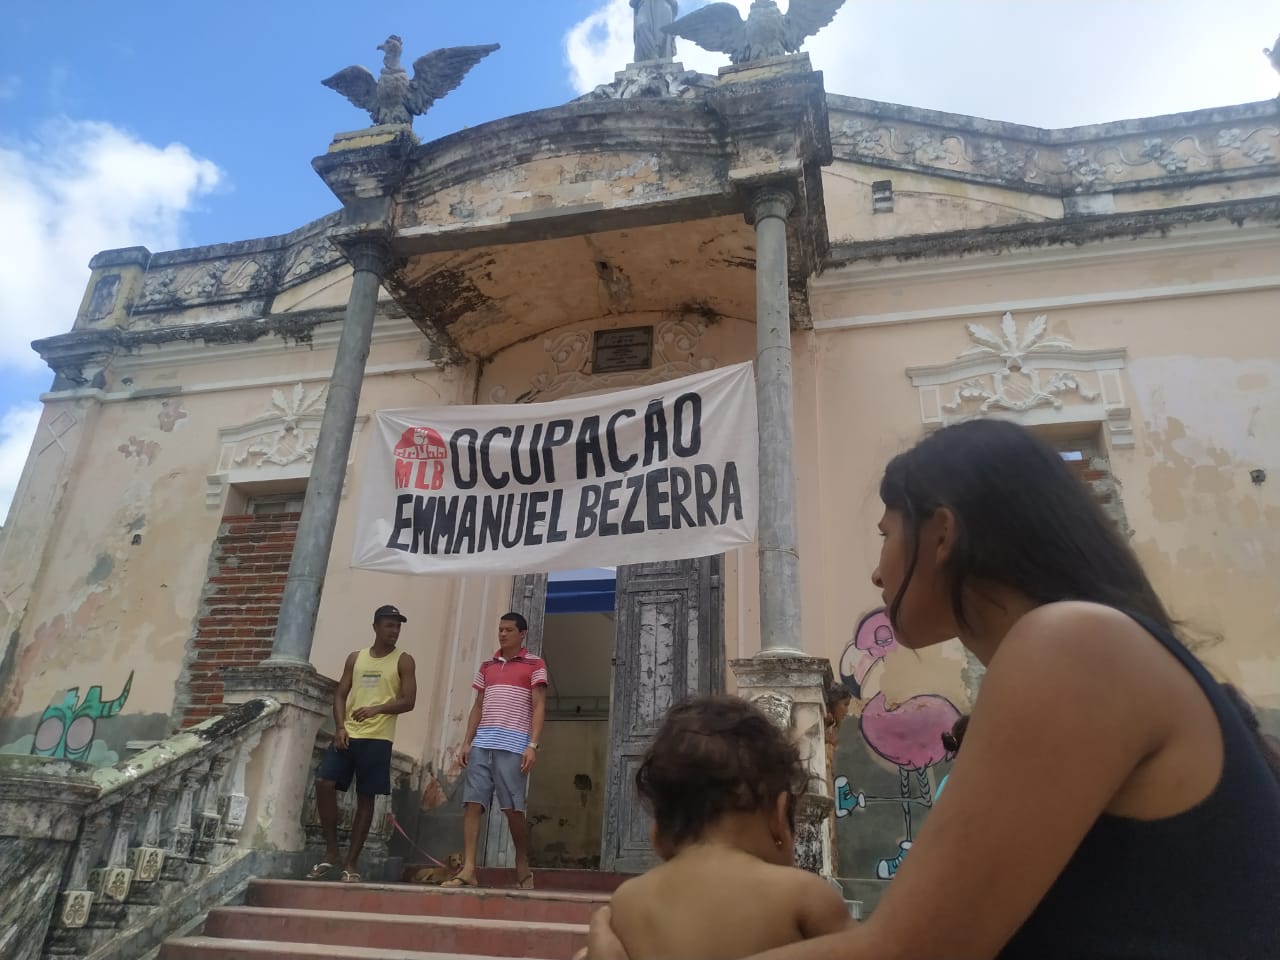 Justiça Federal dá 24 horas para saída da Ocupação Emmanuel Bezerra, mas famílias não são notificadas